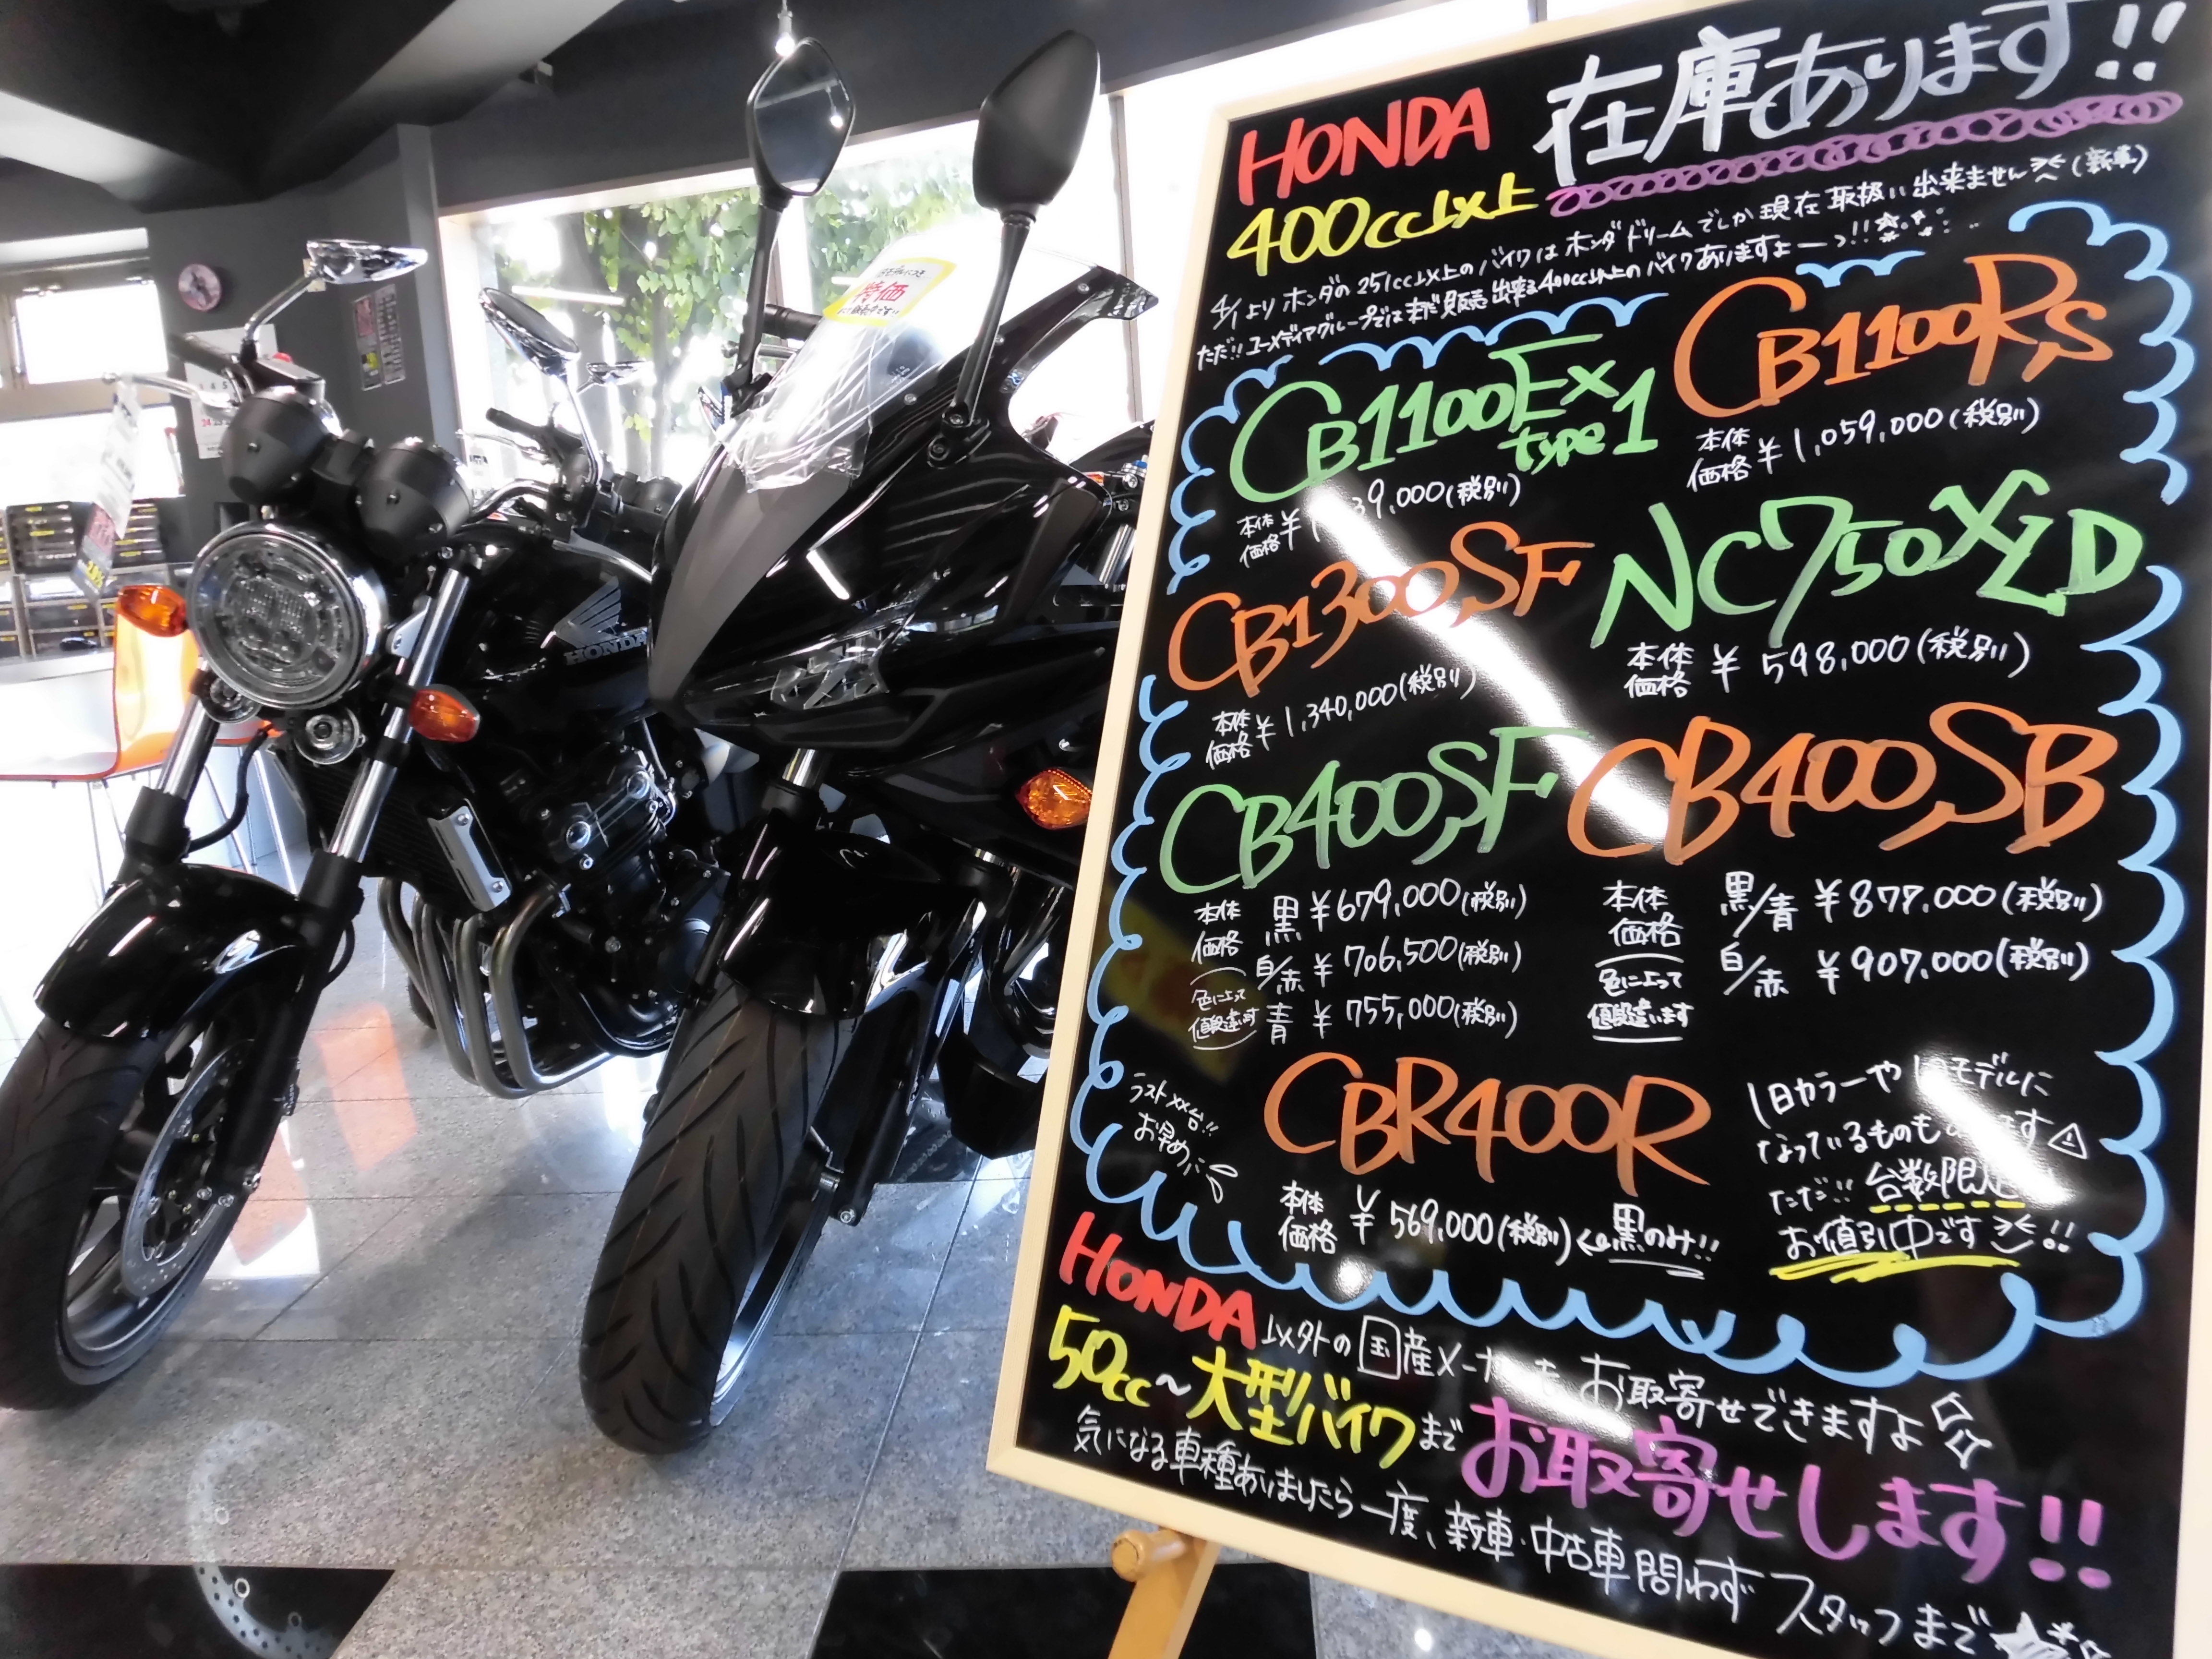 お取り寄せしますよ 最新情報 U Media ユーメディア 中古 バイク 新車バイク探しの決定版 神奈川 東京でバイク探すならユーメディア